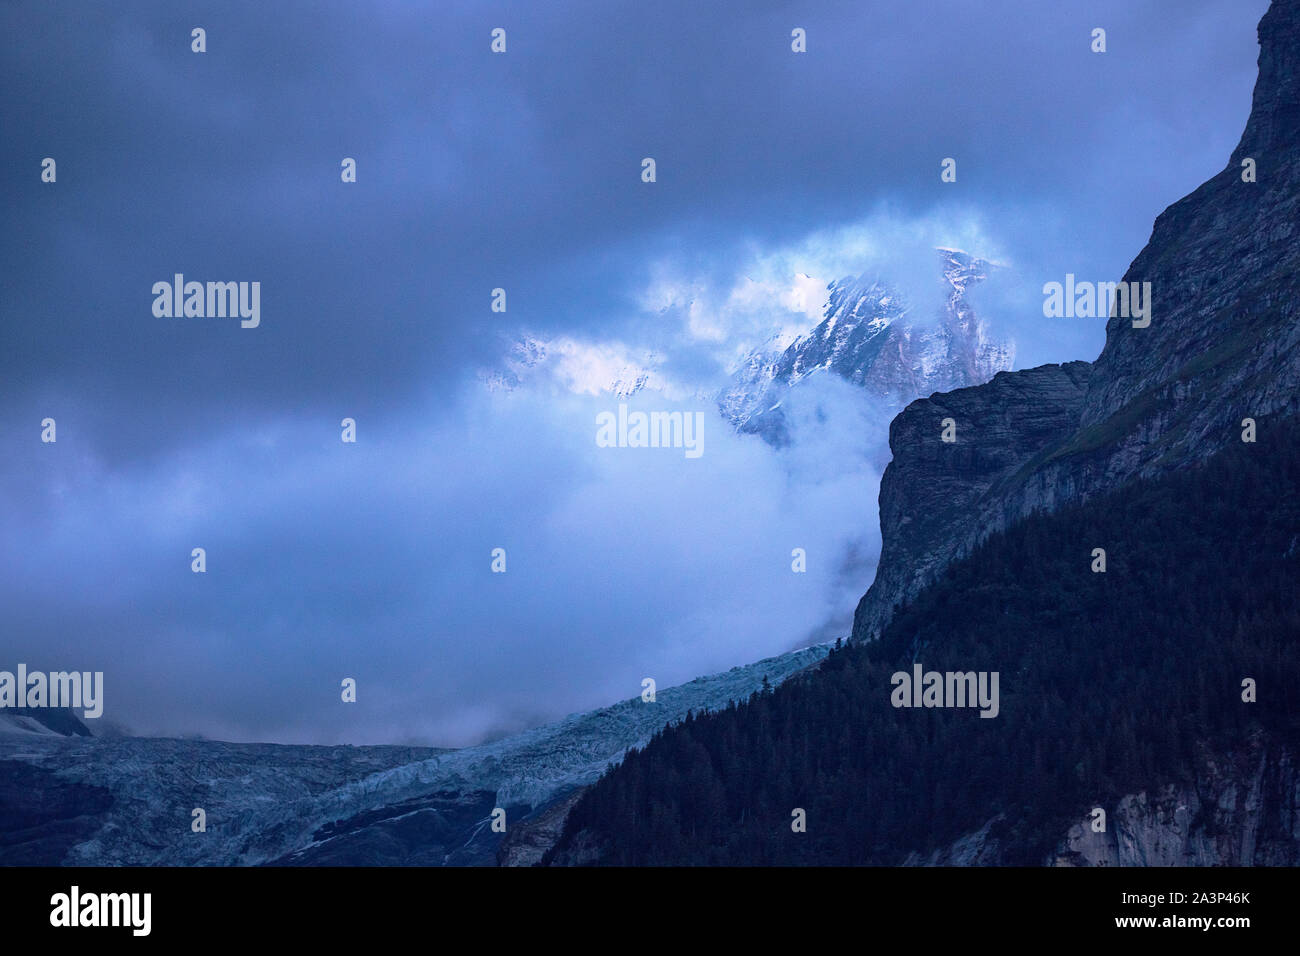 Vista panorámica del glaciar alpino en el atardecer. Cumbres nevadas detrás de las nubes. Cielo nublado. Paisaje alpino en la penumbra. Fiescherhorn, Suiza. Foto de stock